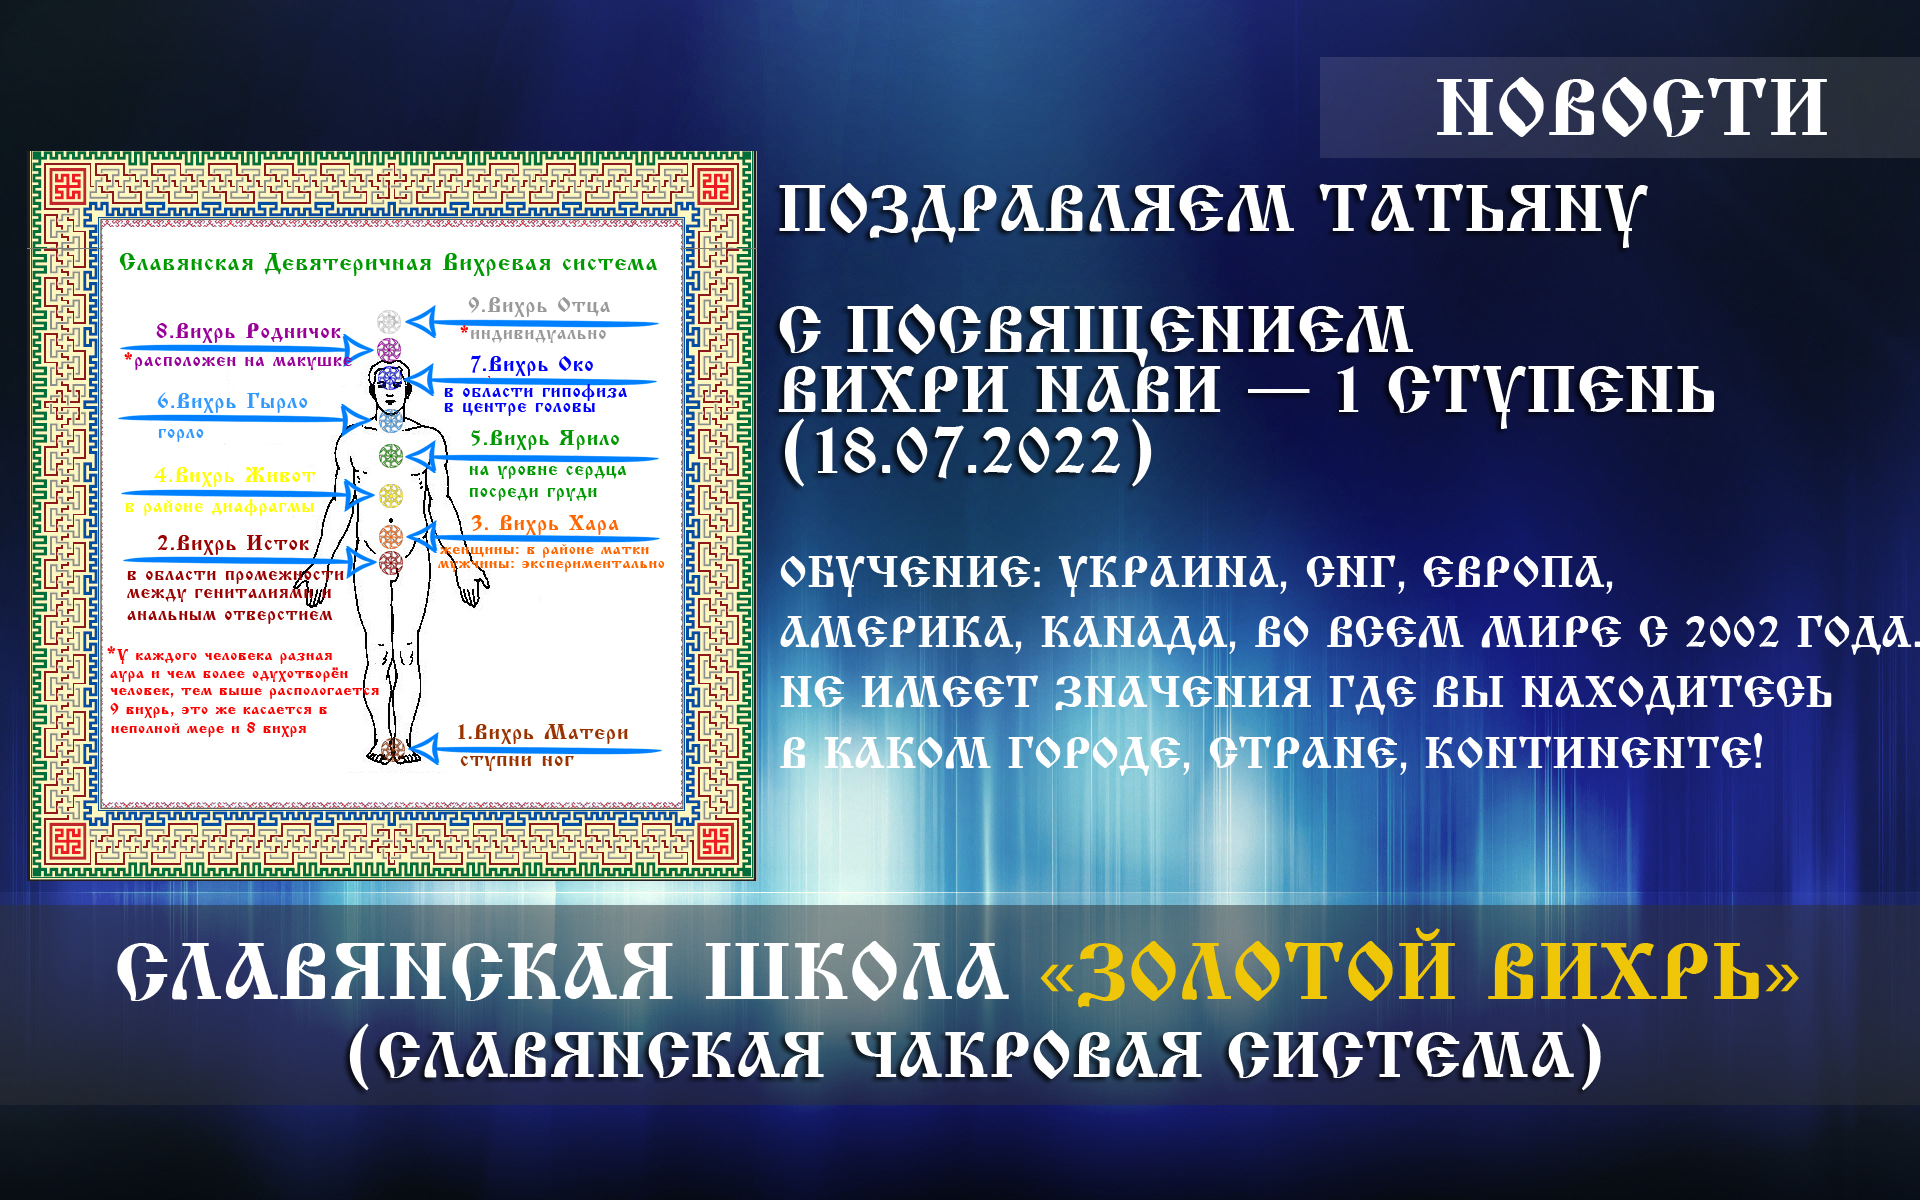 Поздравляем Татьяну, с посвящением «Вихри Нави — 1 ступень» (18.07.2022) | Украина Киев